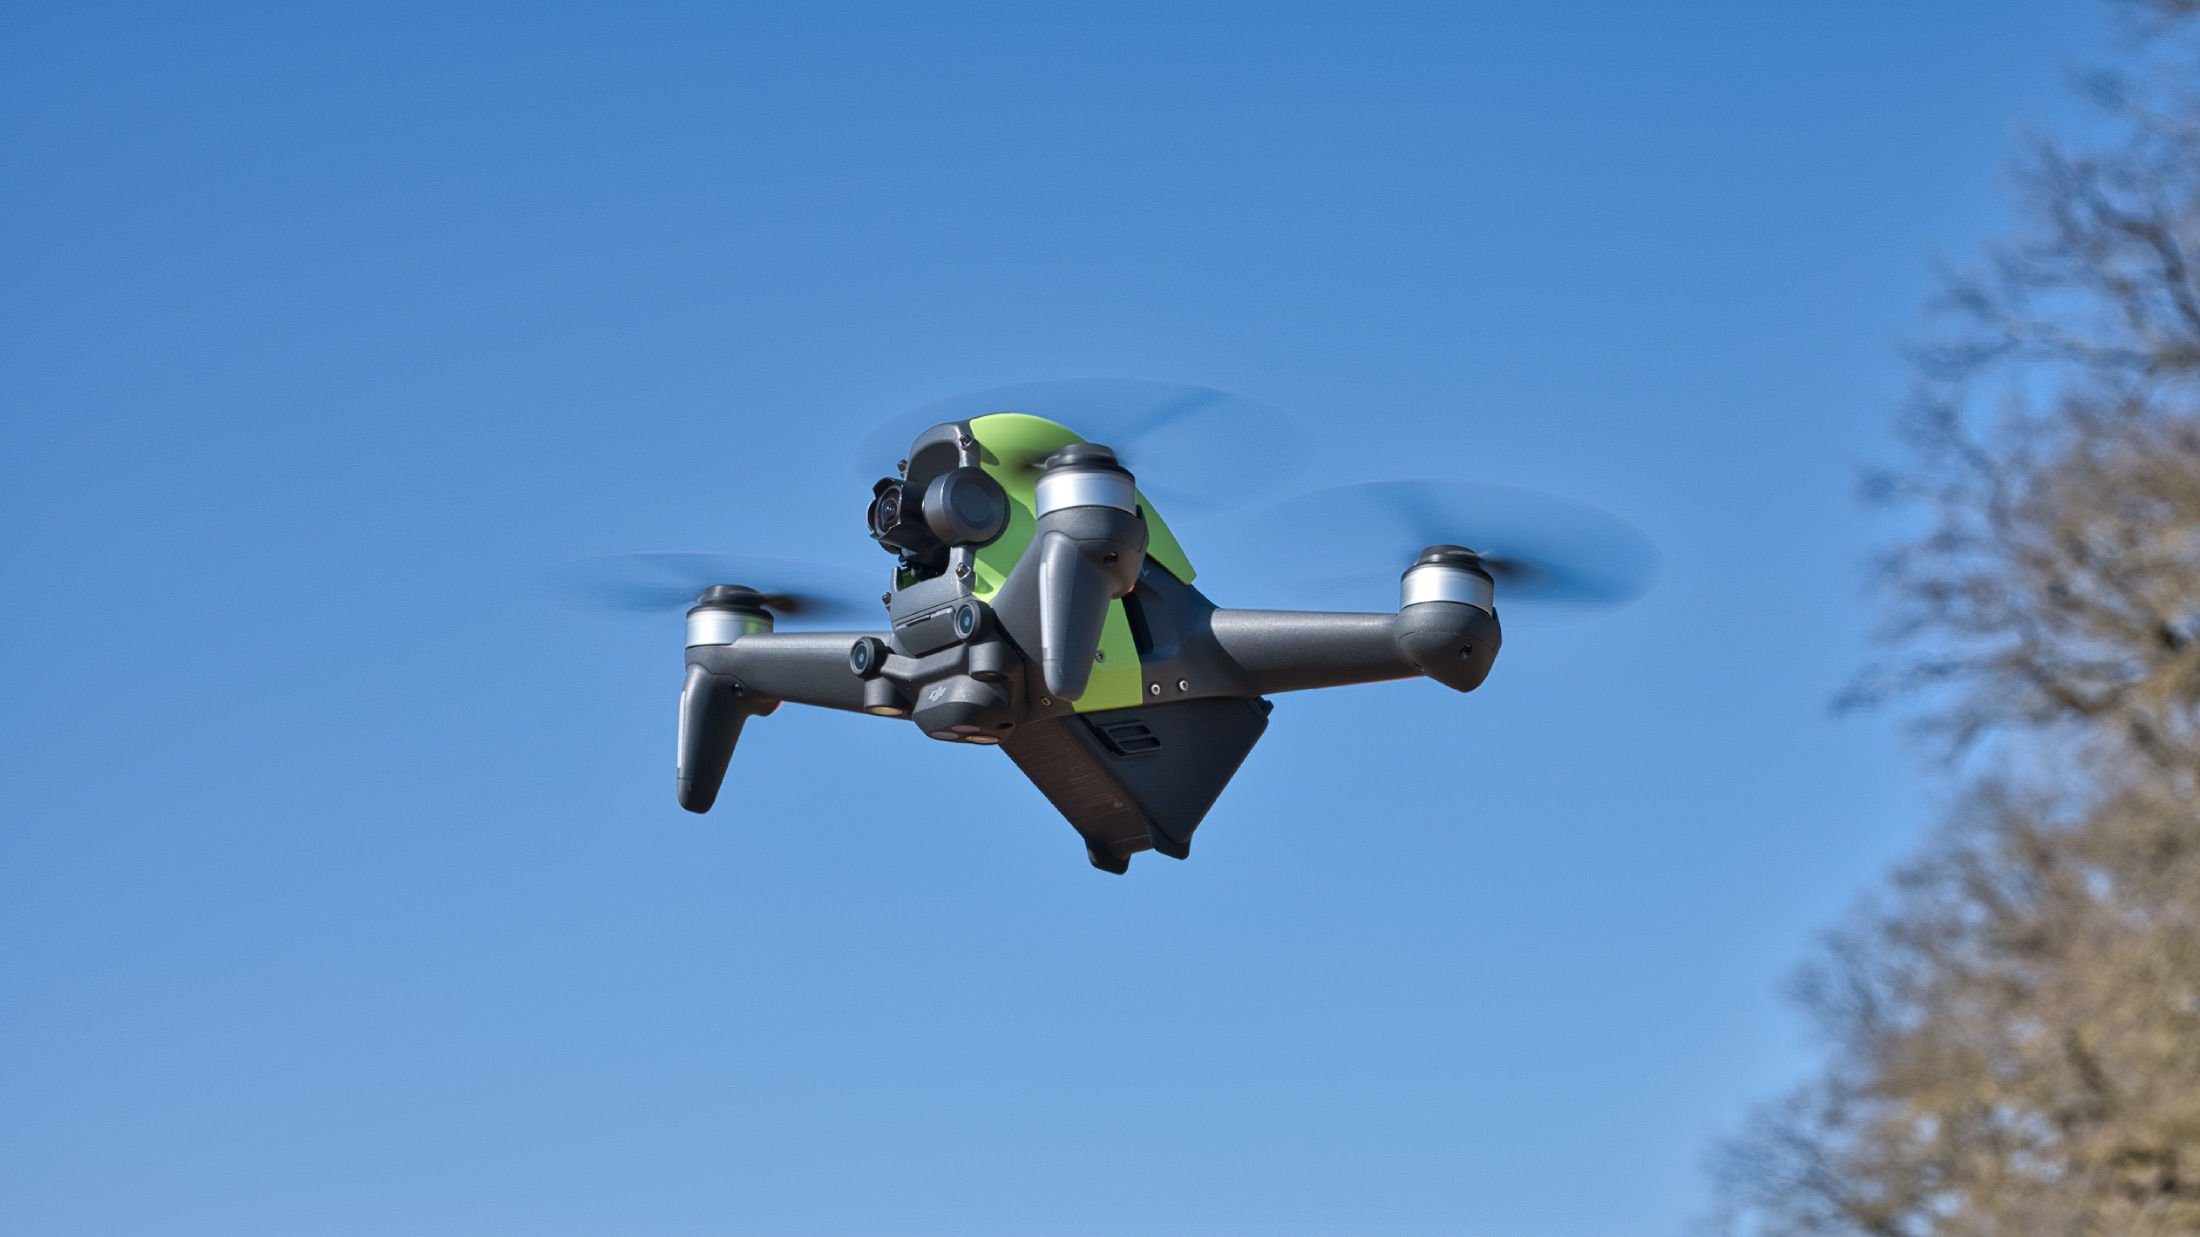 Die DJI FPV Drohne im Flug - Schräg von der Seite